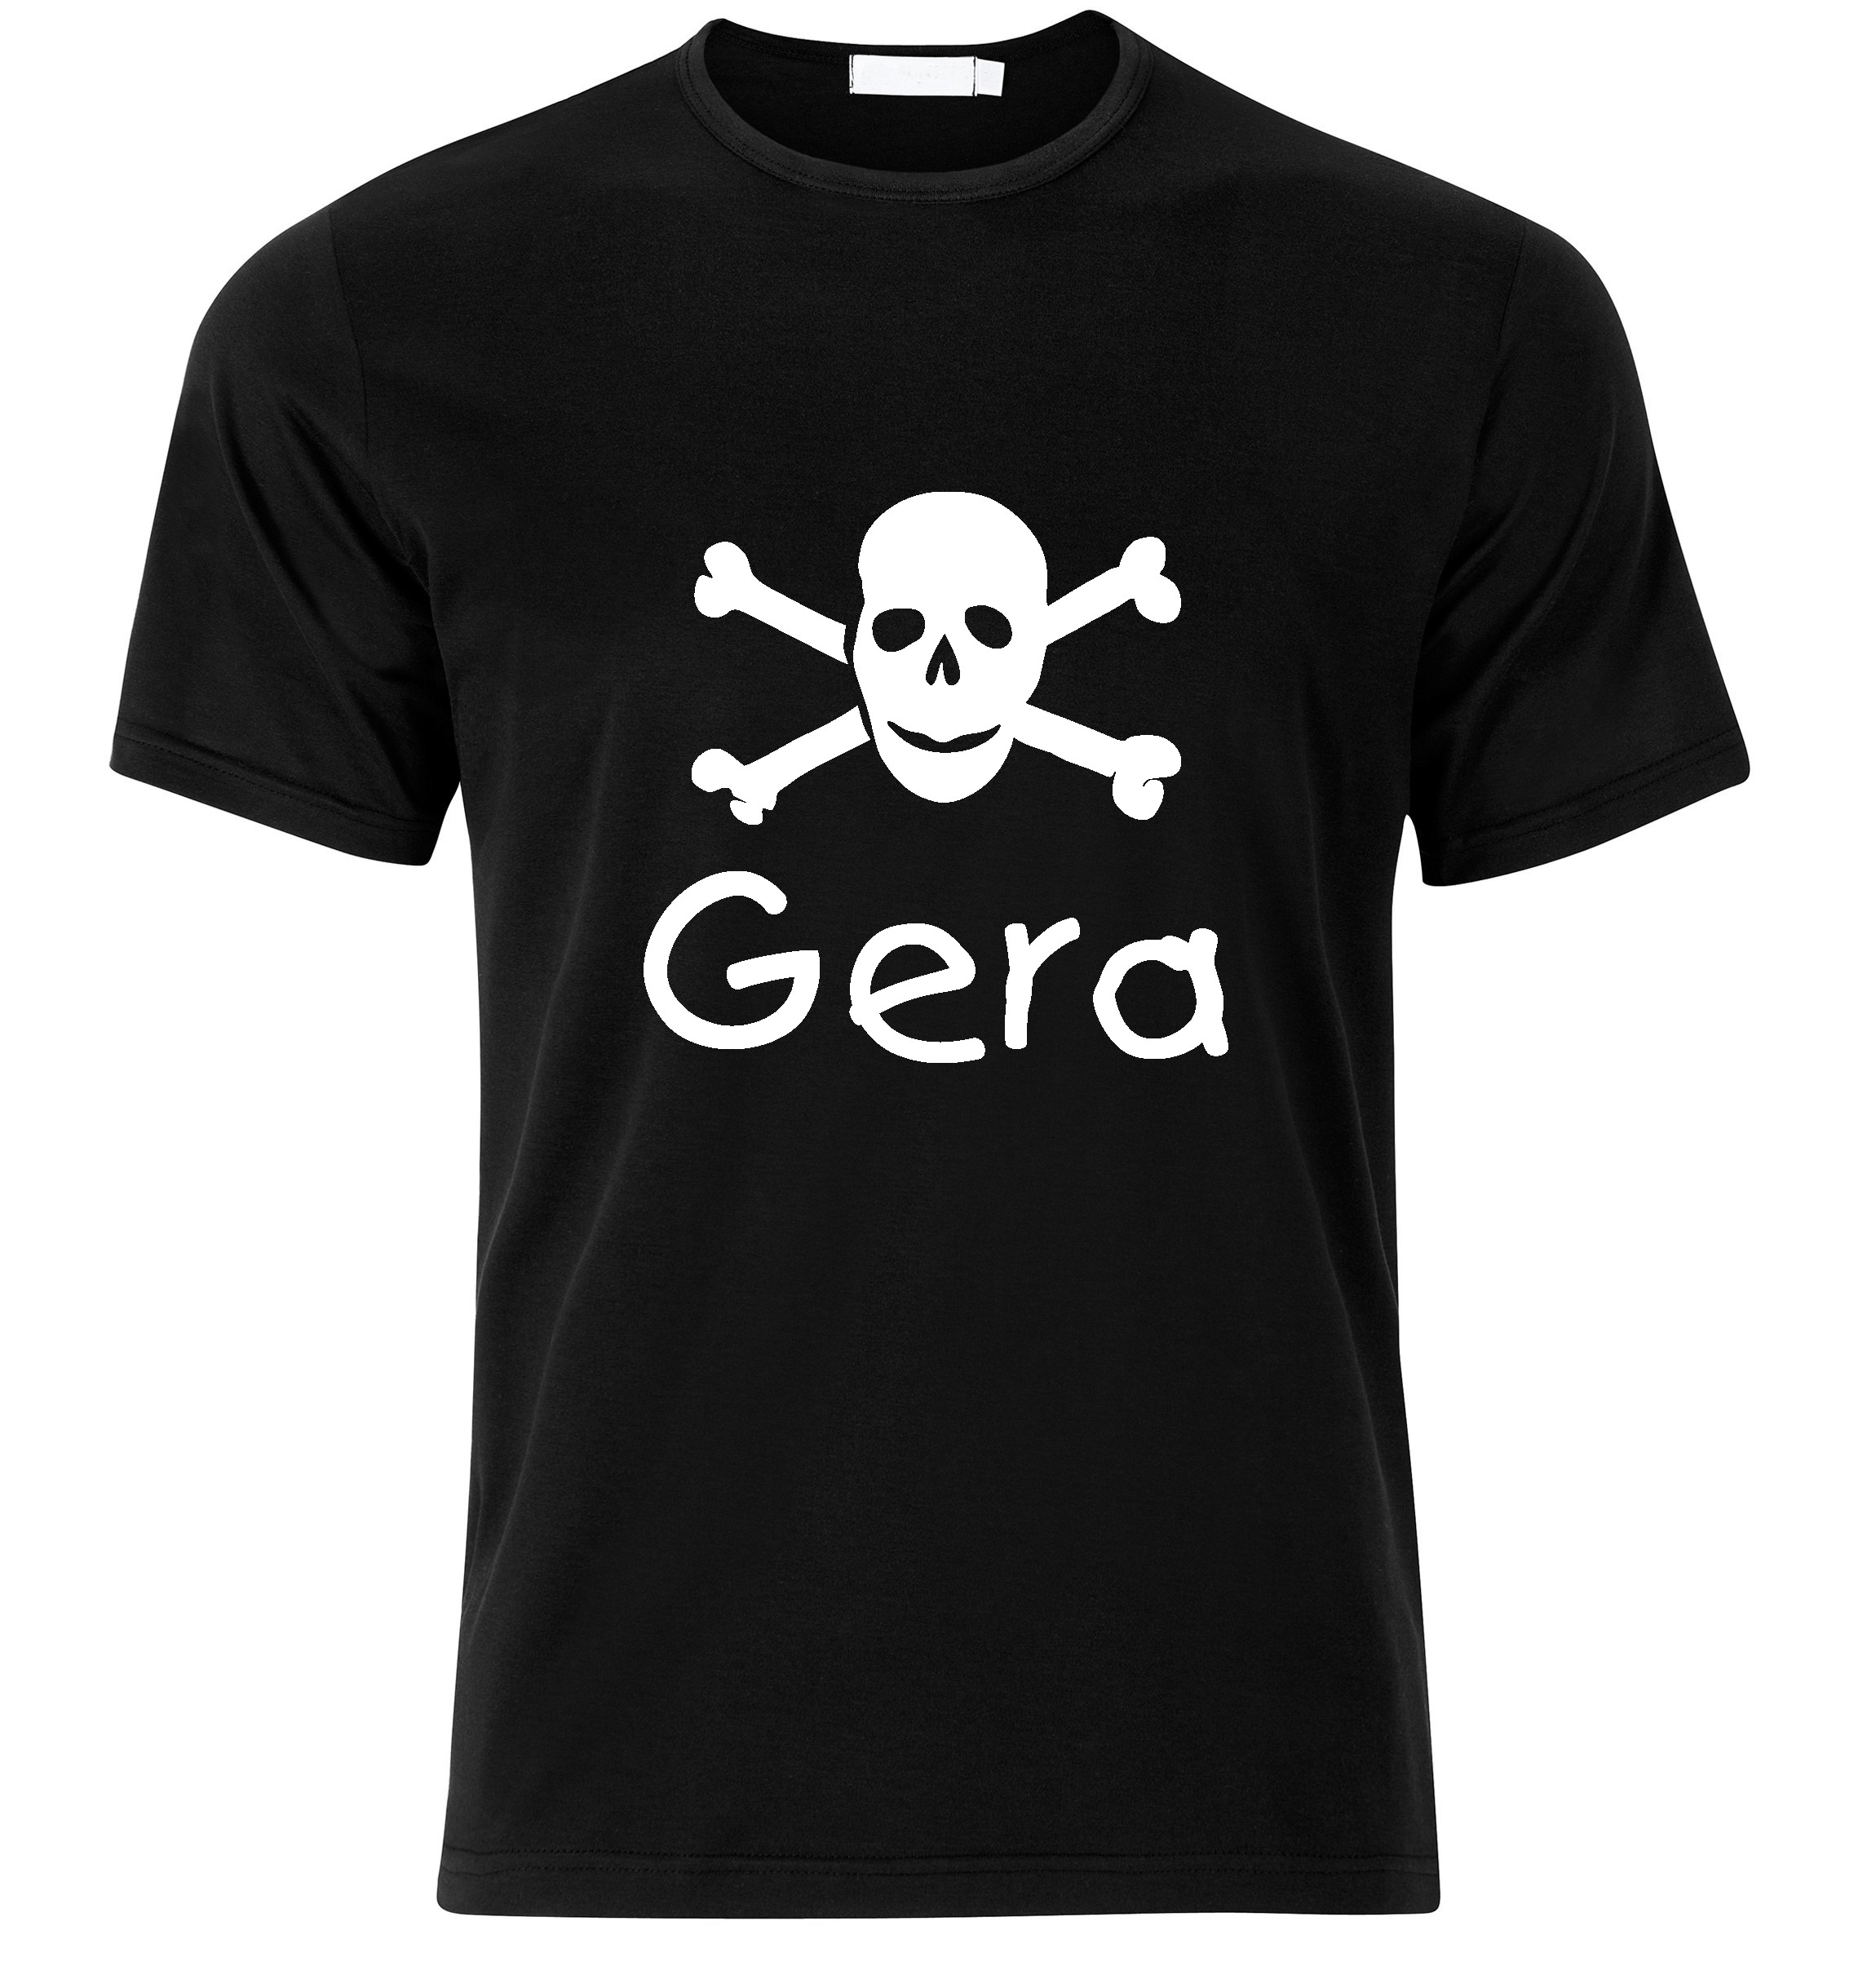 T-Shirt Gera Jolly Roger, Totenkopf